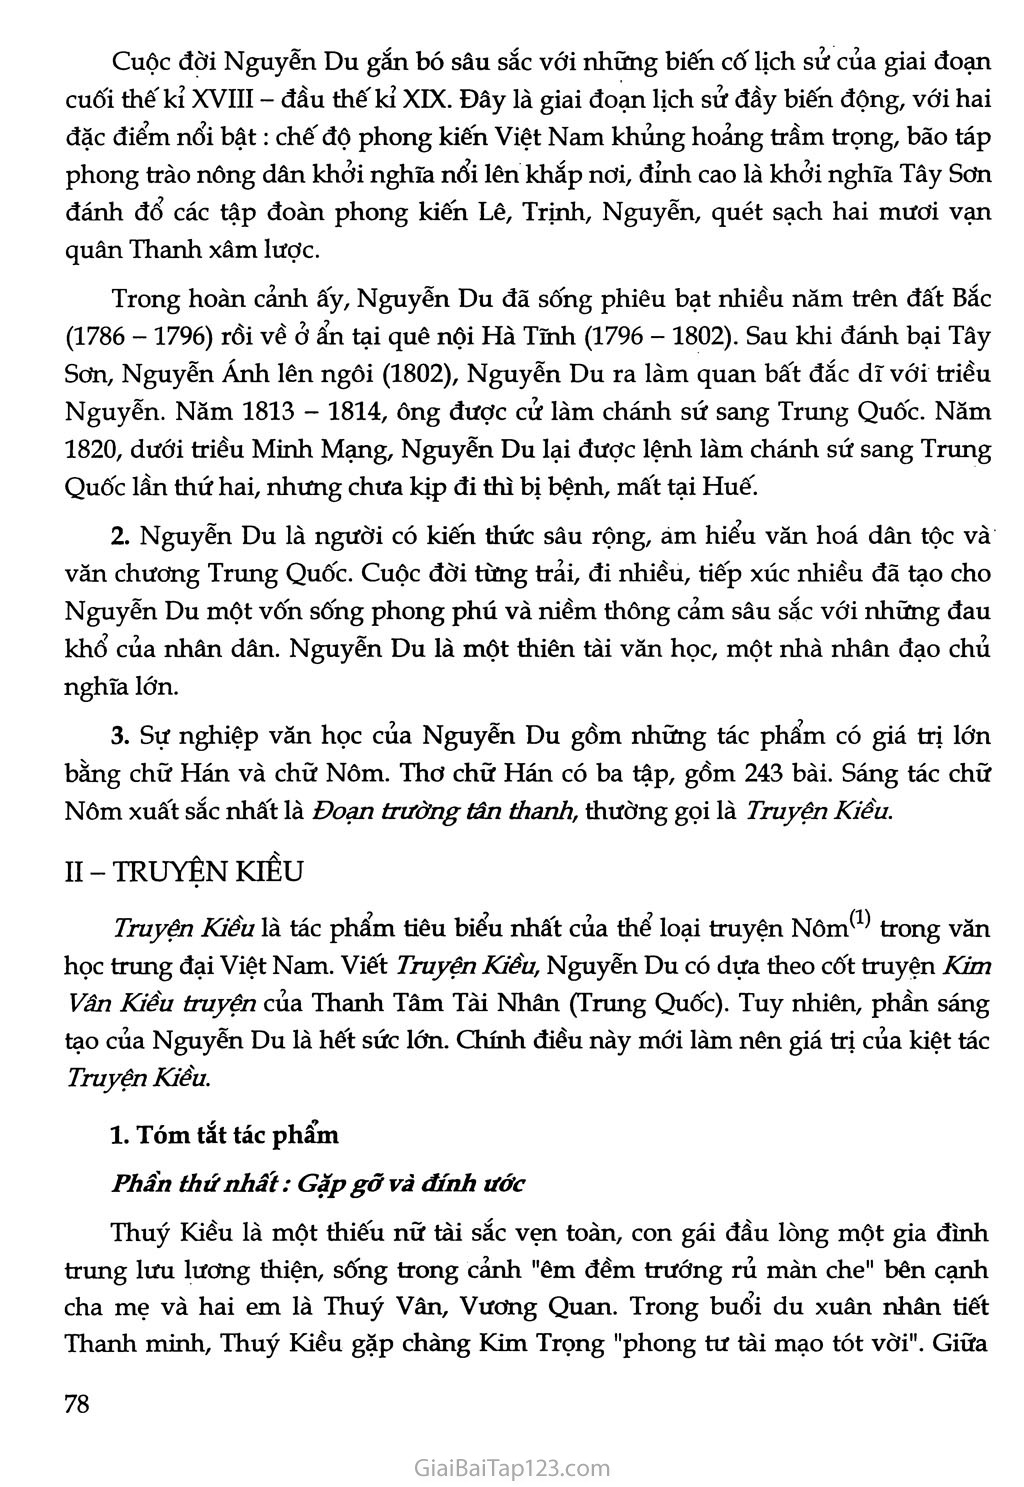 Truyện Kiều của Nguyễn Du trang 3